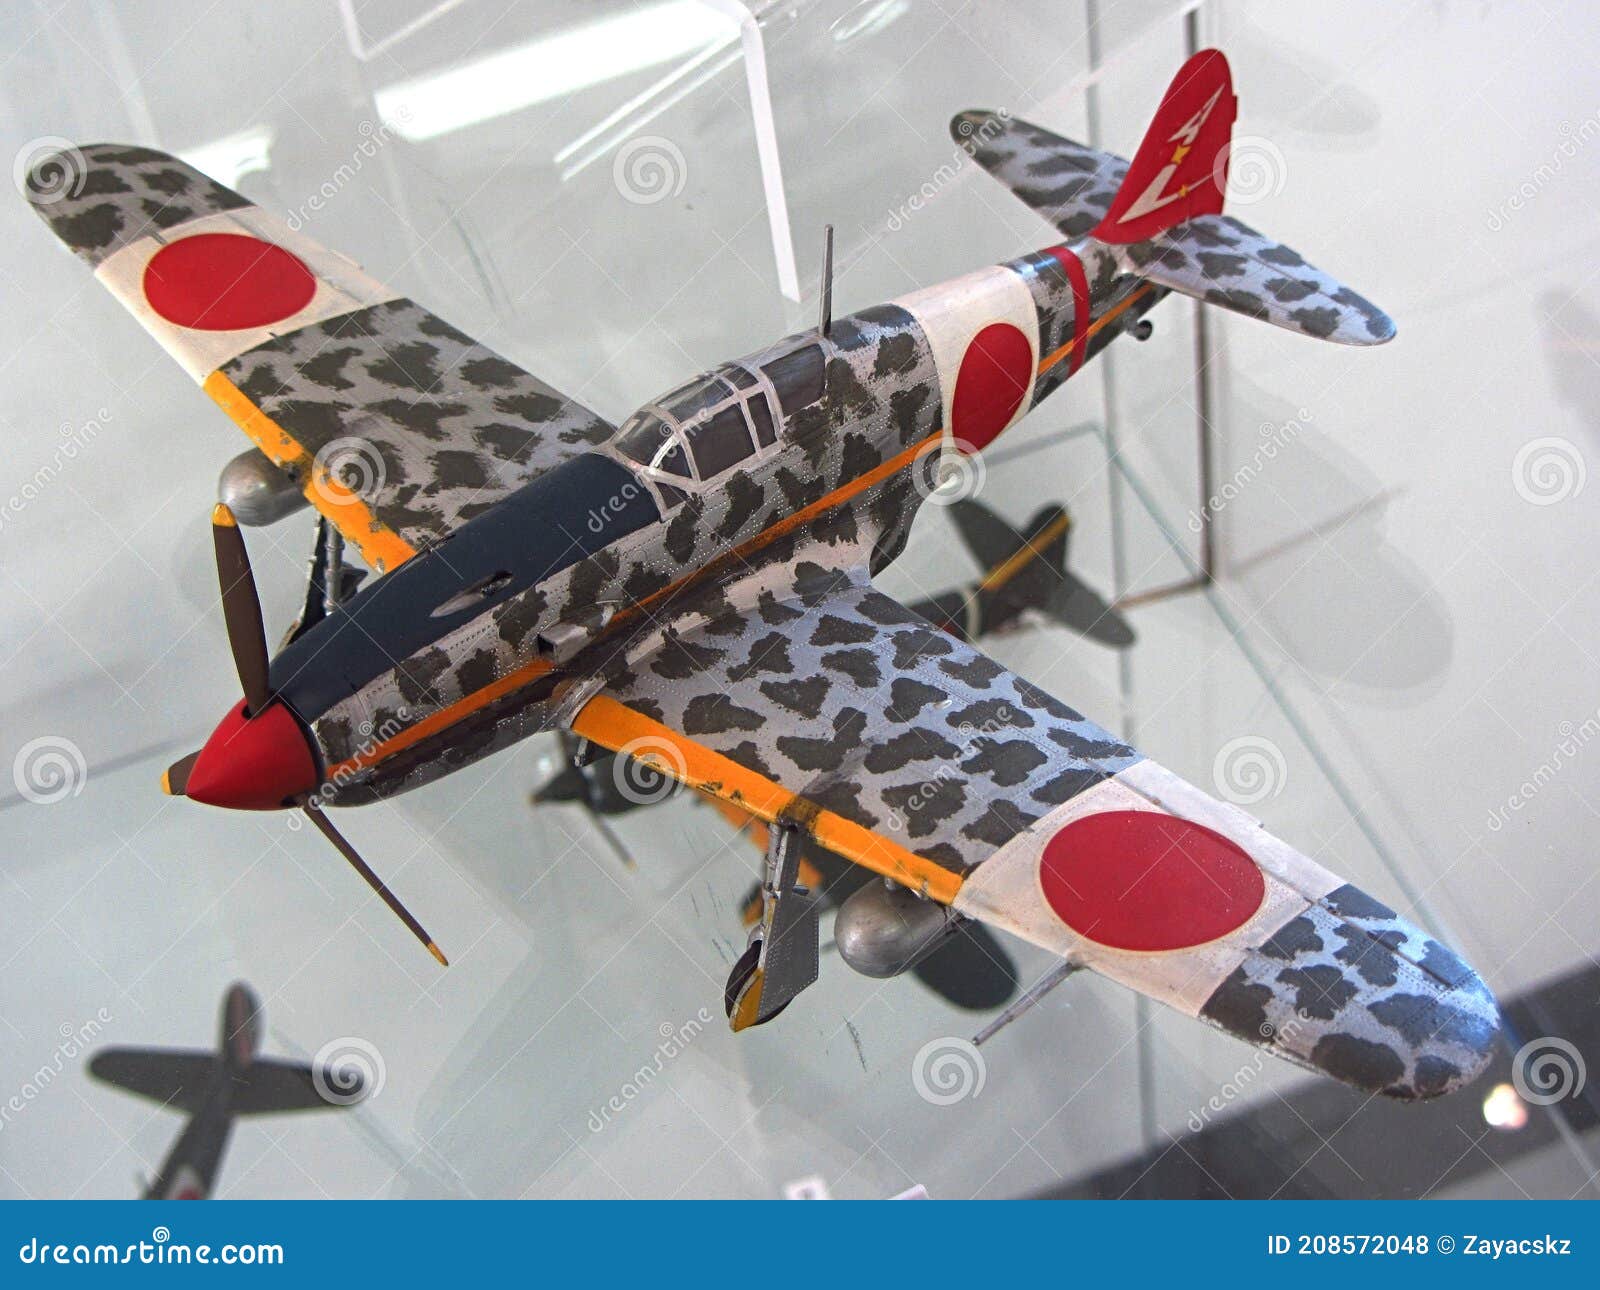 Model of WW2 Japanese Imperial Army Monoplane Fighter Aircraft Kawasaki Ki-100 Sentouki or Abbreviated As Goshikisen. Stock Photo - Image of theater, model: 208572048